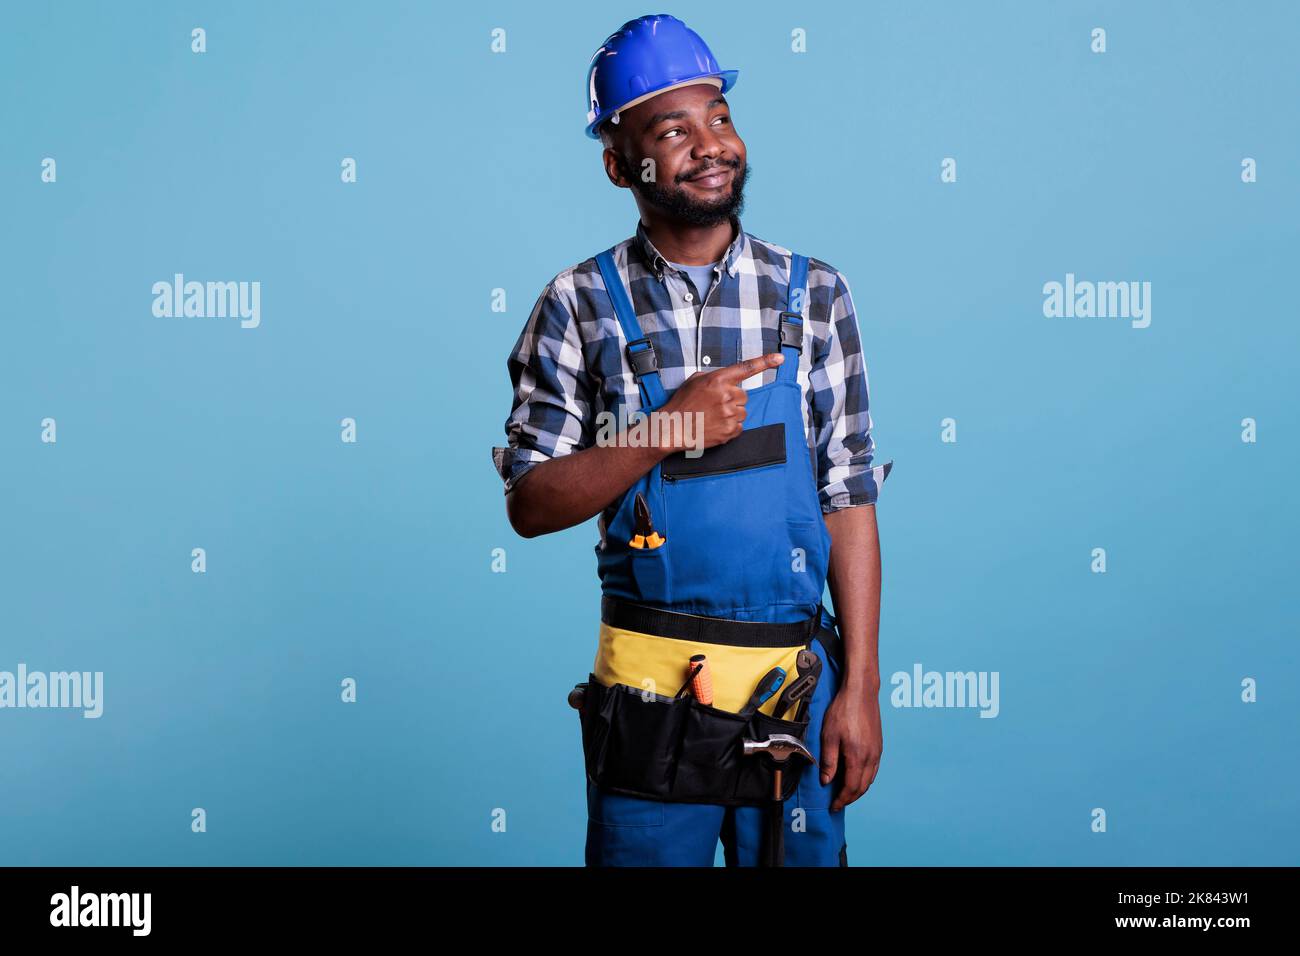 Porträt eines glücklichen Bauarbeiters bei der Arbeit, der einen harten Hut trägt und seinen Finger zur Seite zeigt. Elektriker trägt Gürtel mit Werkzeugen im Studio vor blauem Hintergrund aufgenommen. Stockfoto